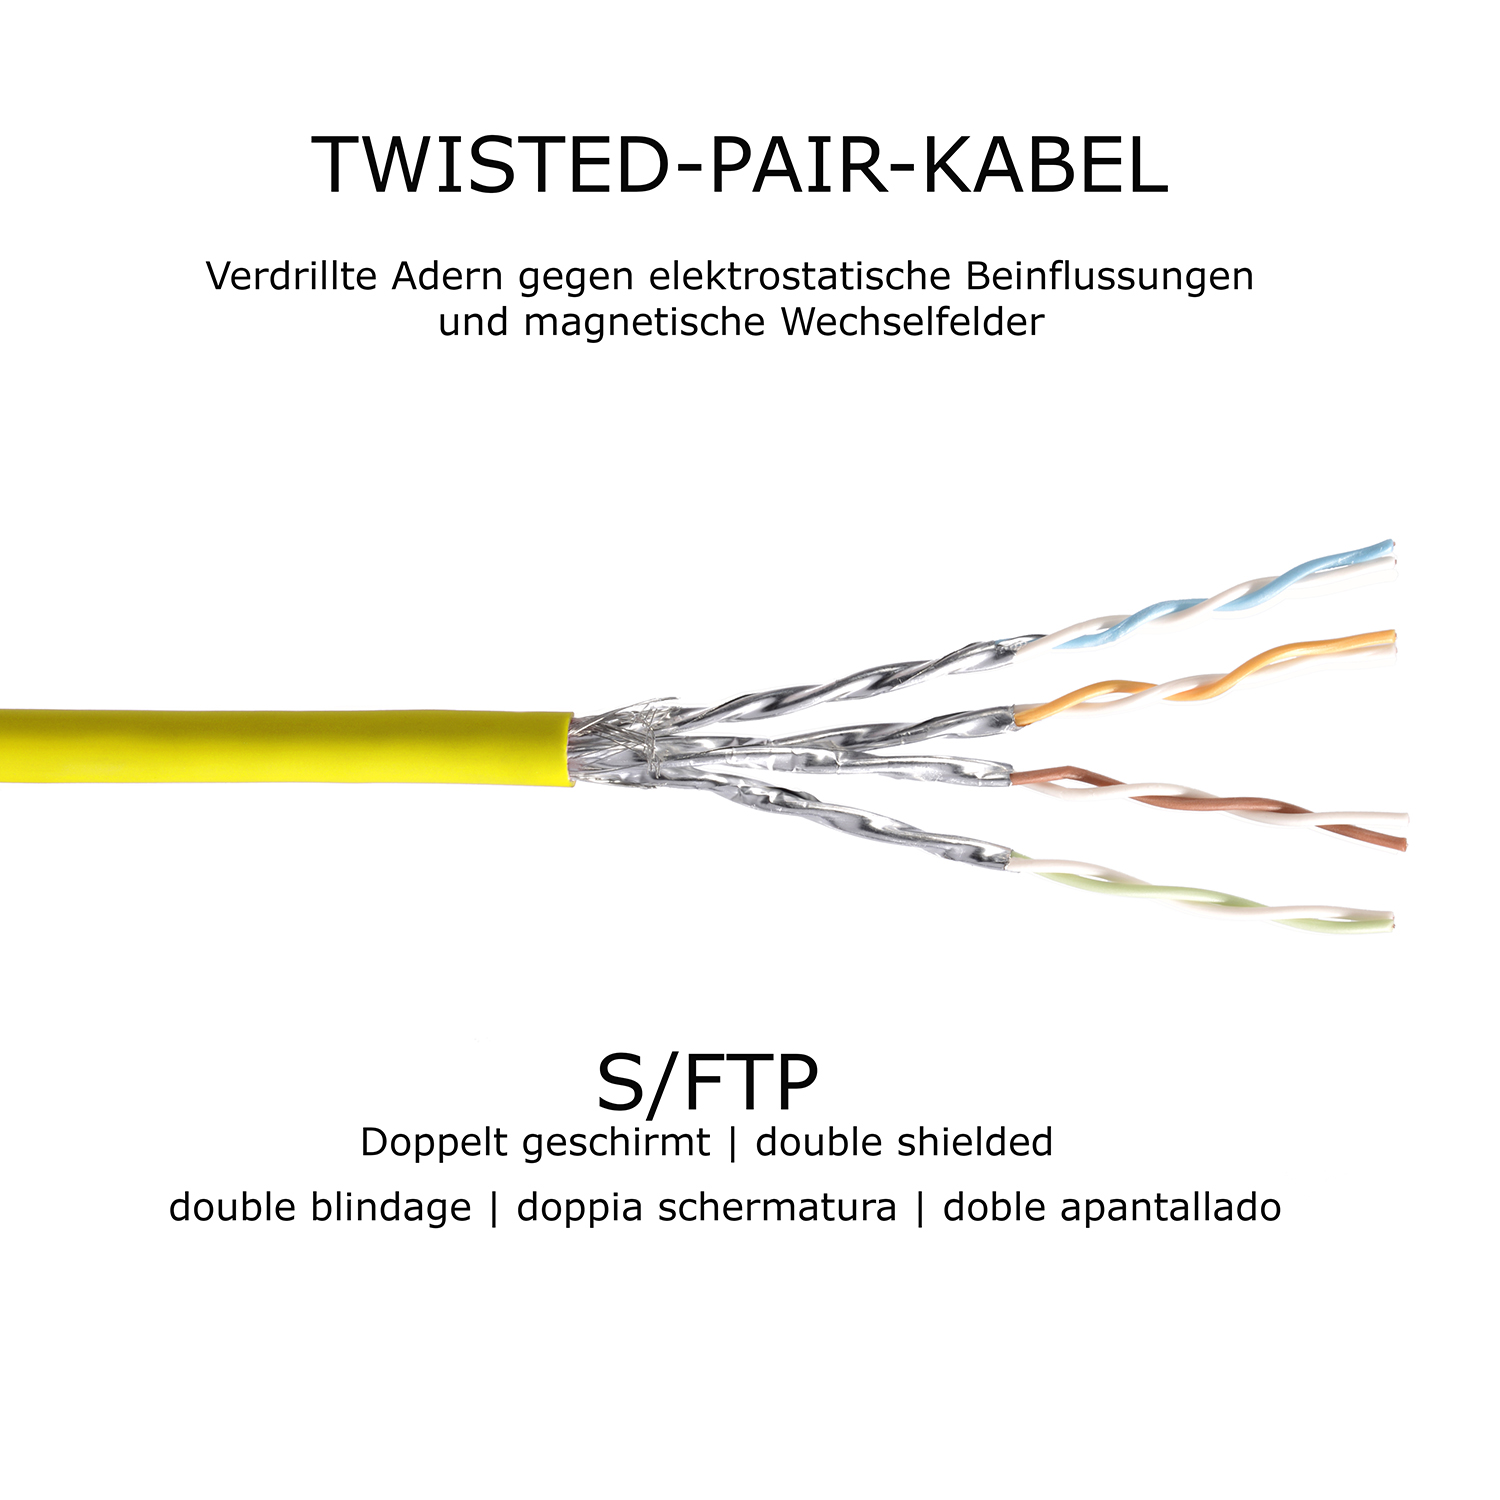 TPFNET 1,5m Patchkabel / Netzwerkkabel gelb, 1000Mbit, 1,5 m S/FTP Netzwerkkabel